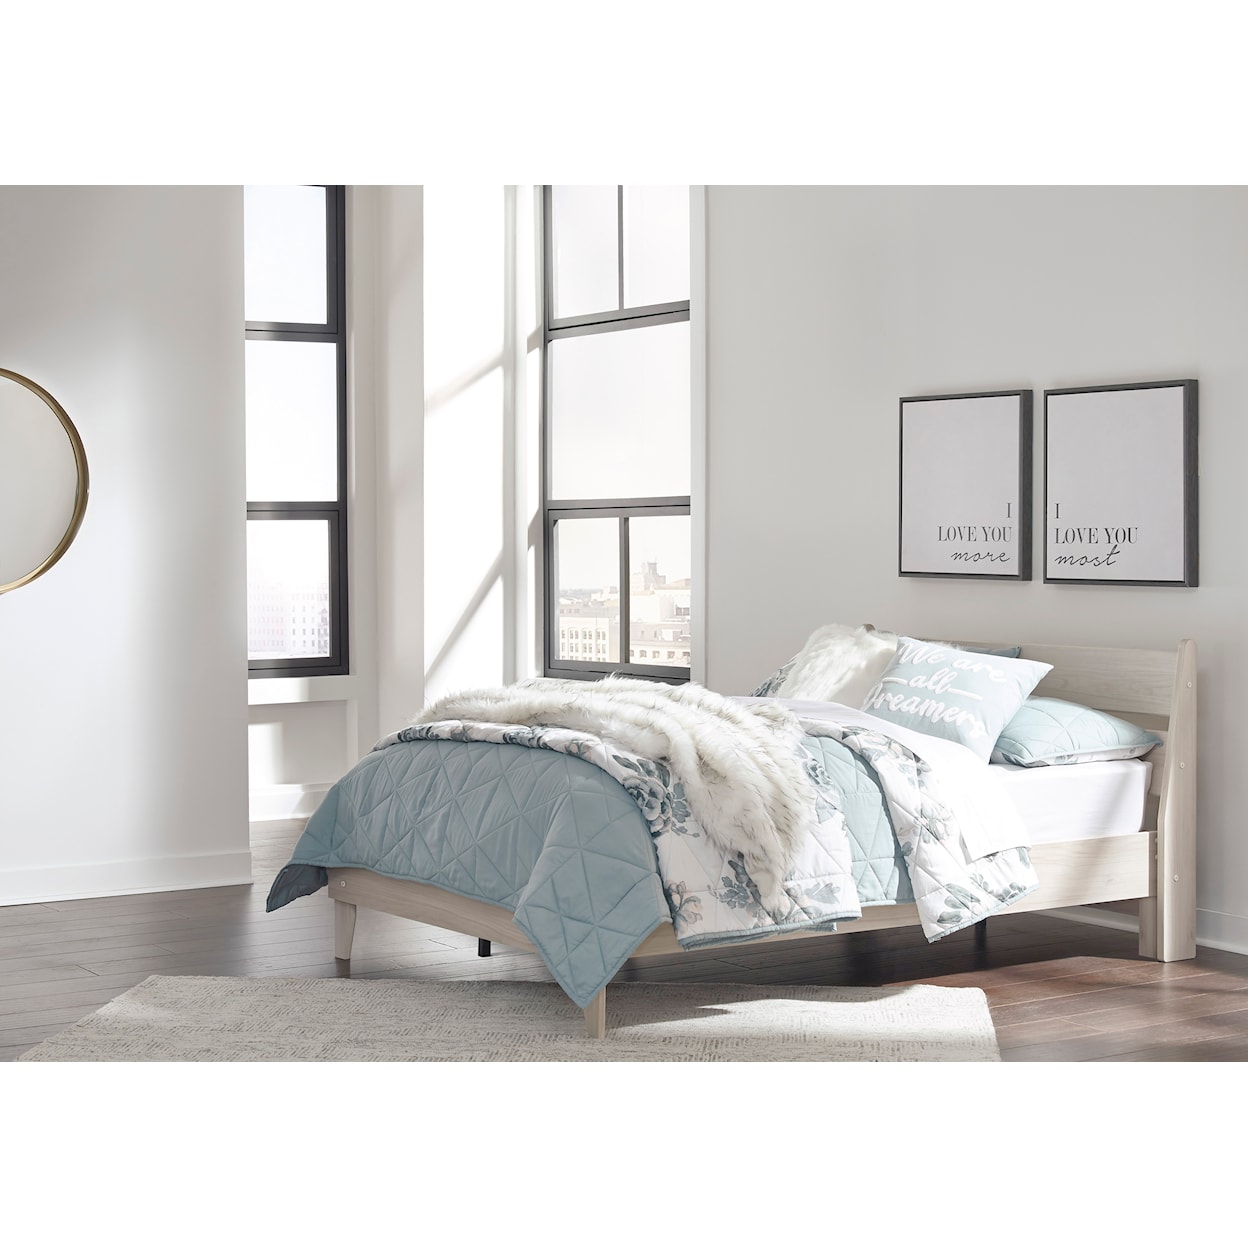 Ashley Furniture Signature Design Socalle Full Platform Bed